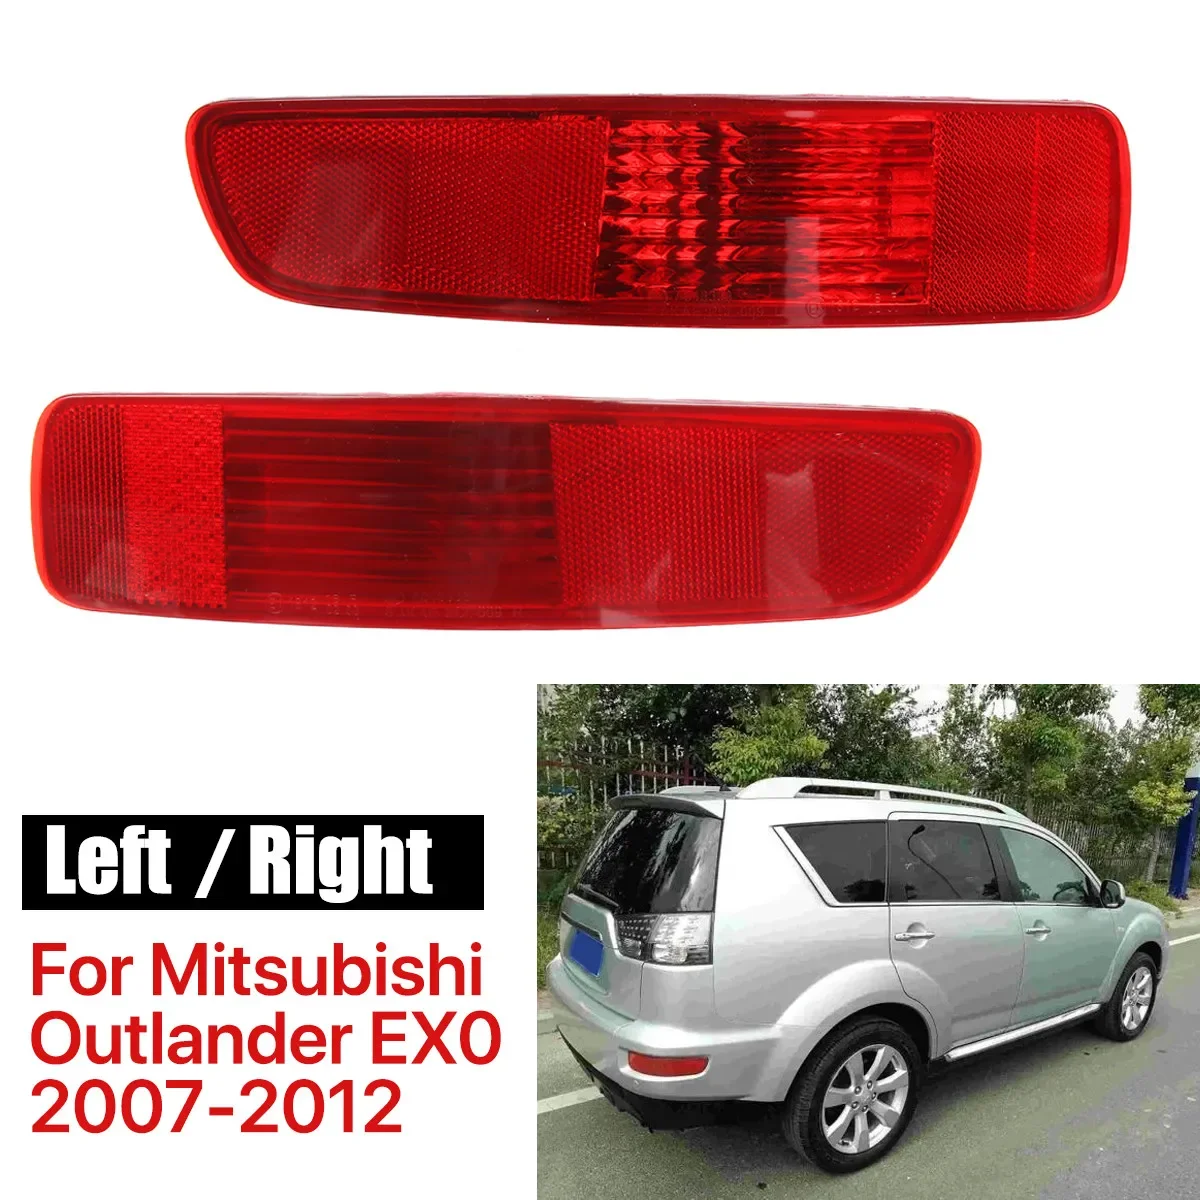 

Задний задний бампер, противотуманная фара для Mitsubishi Outlander EX 2007-2012 8337A030 8355A004 8352A005, задний бампер, отражатель, лампа